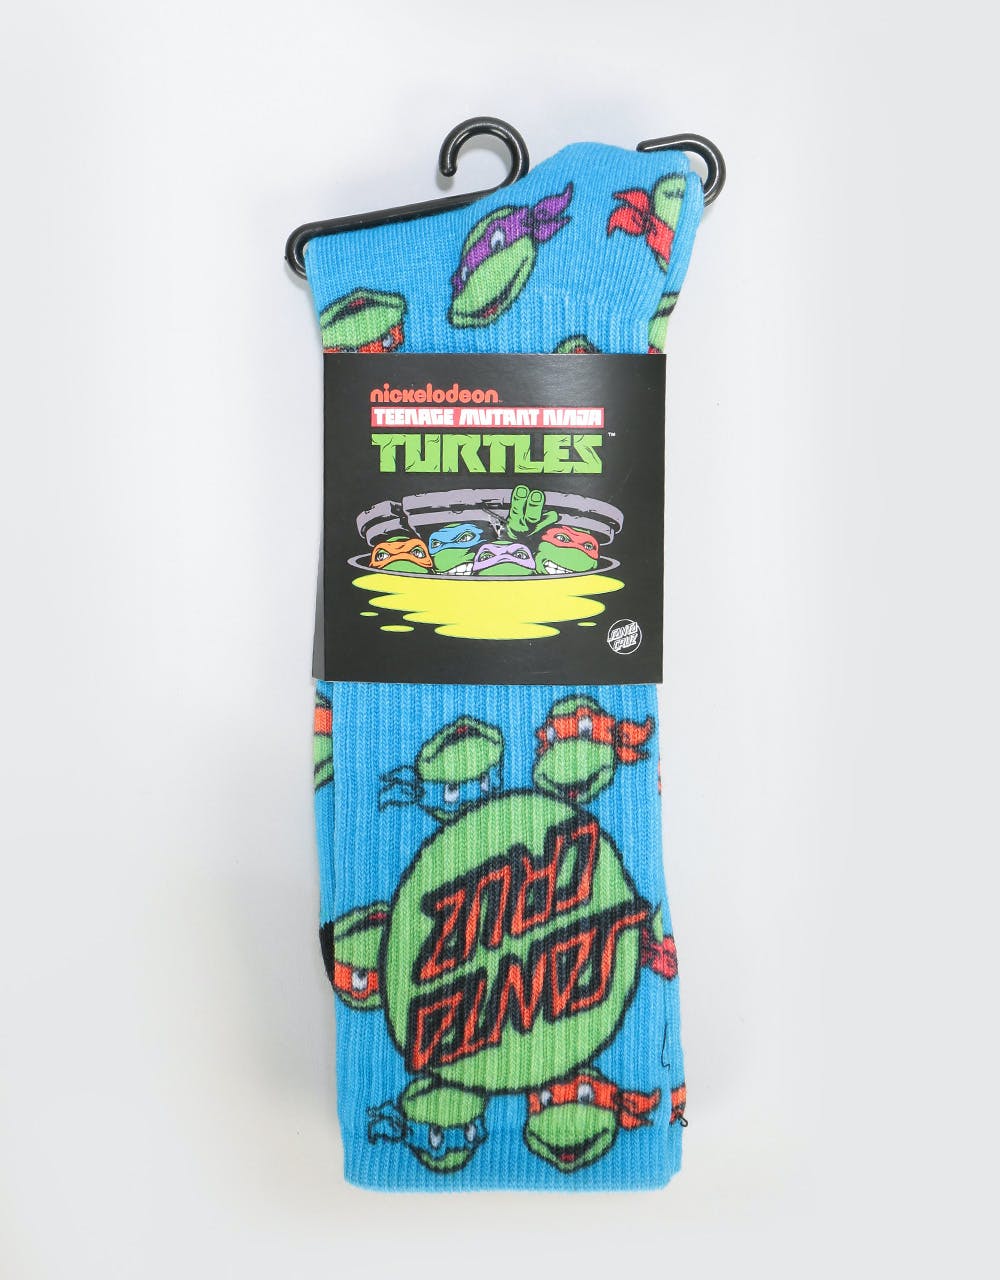 Santa Cruz x TMNT Ninja Turtles Socks - Blue